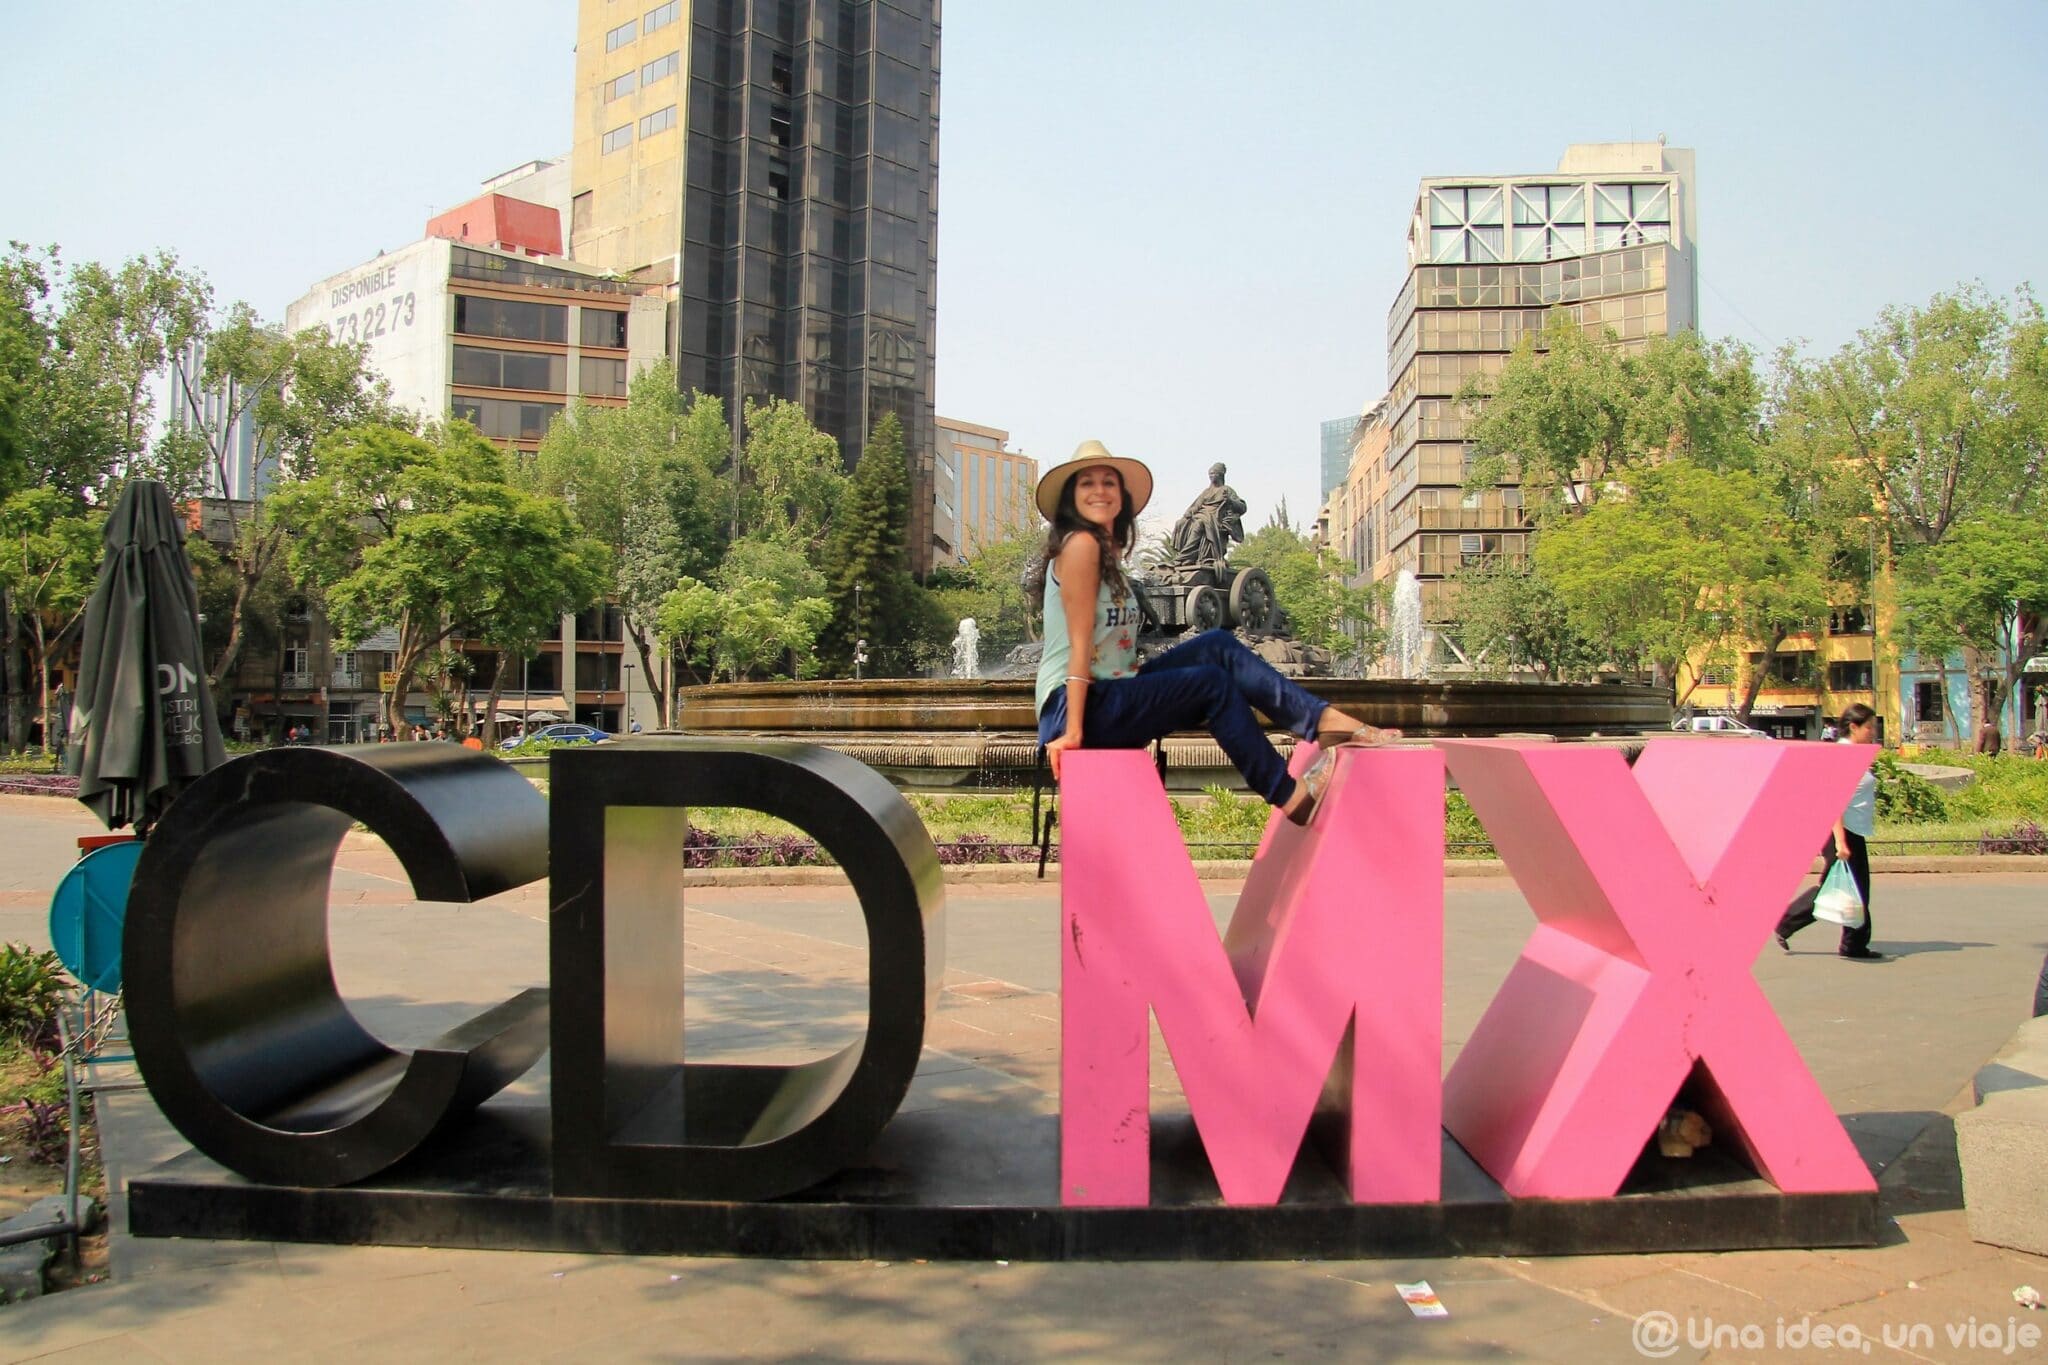 Ciudad de México imprescindible: Las colonias Condesa y Roma en DF